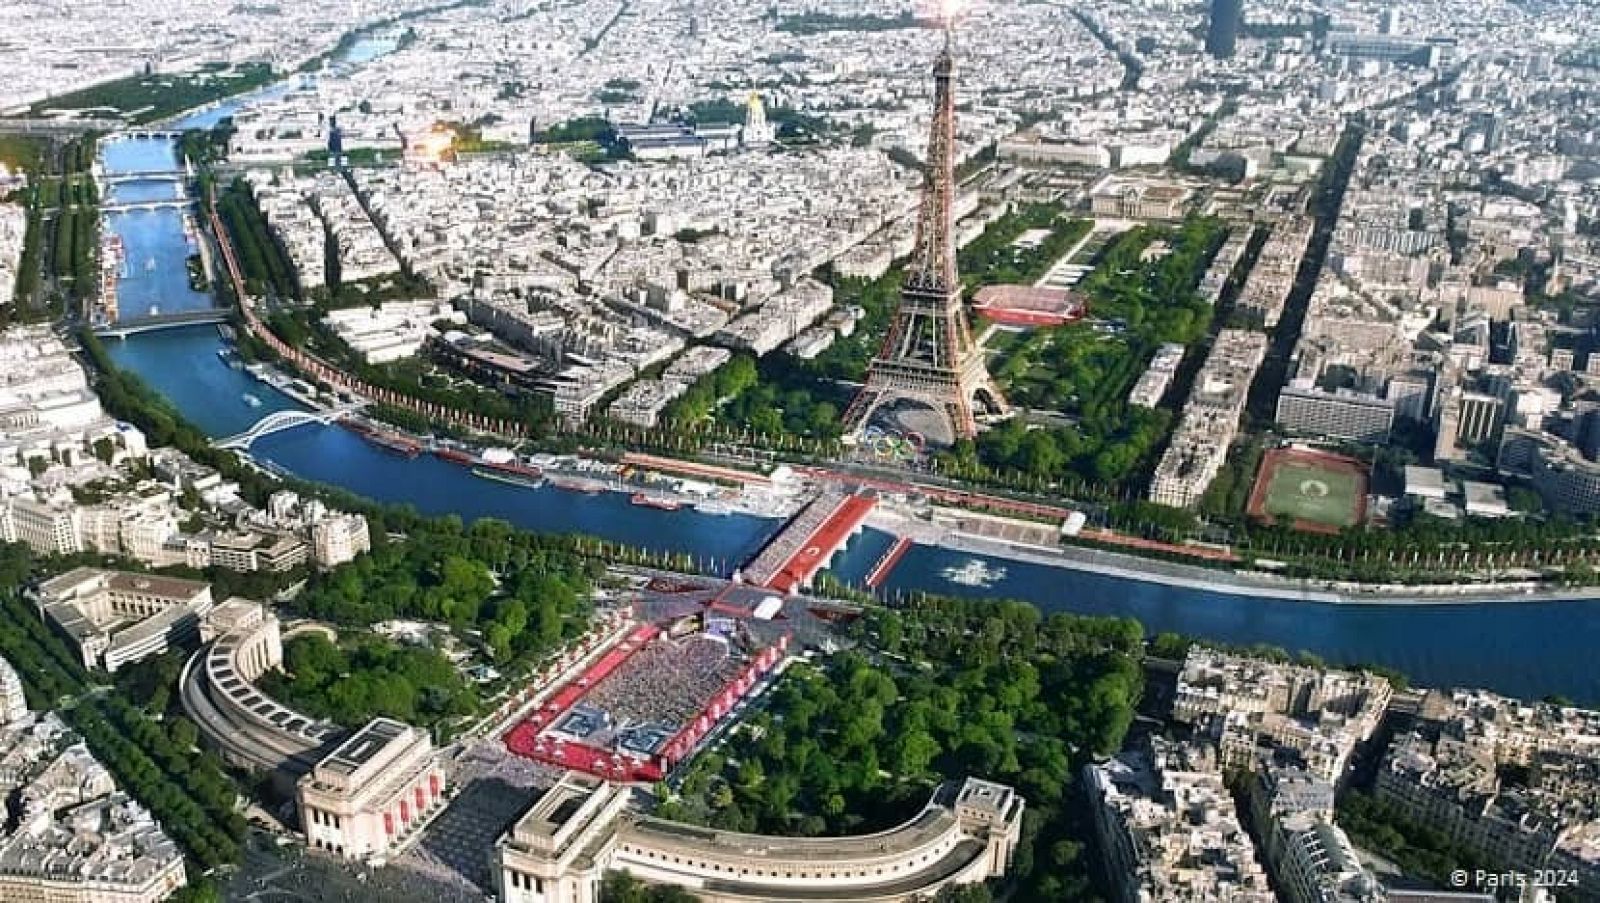 Juegos de París 2024: Vista aérea de la capital francesa con el río Sena en medio